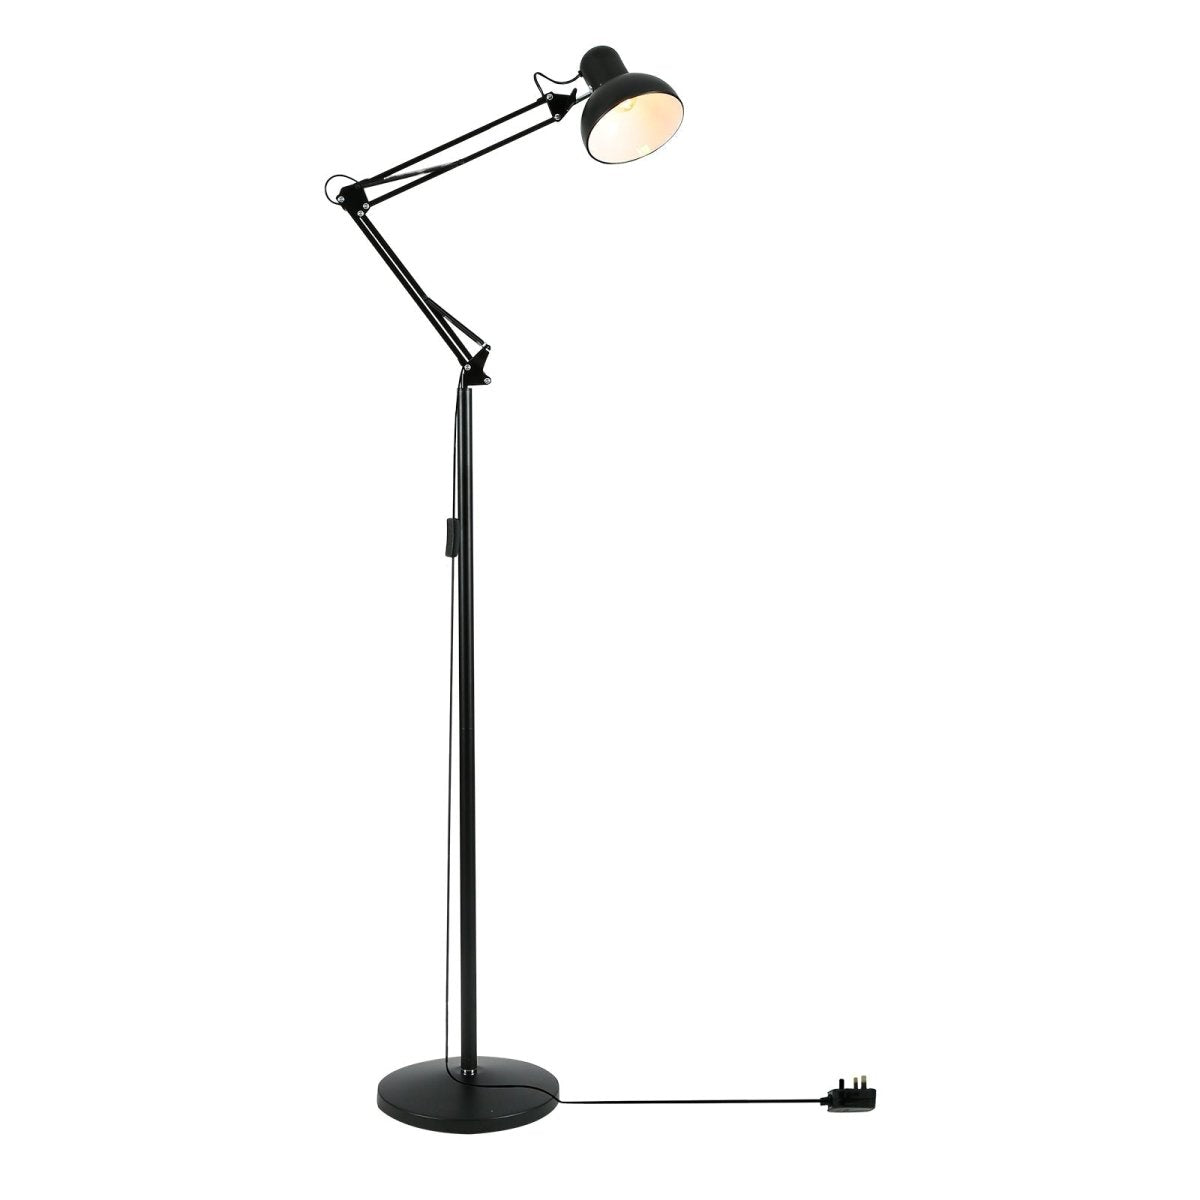 Main image of Swing Arm Architect Model Floor Lamp E27 Black | TEKLED 130-03351